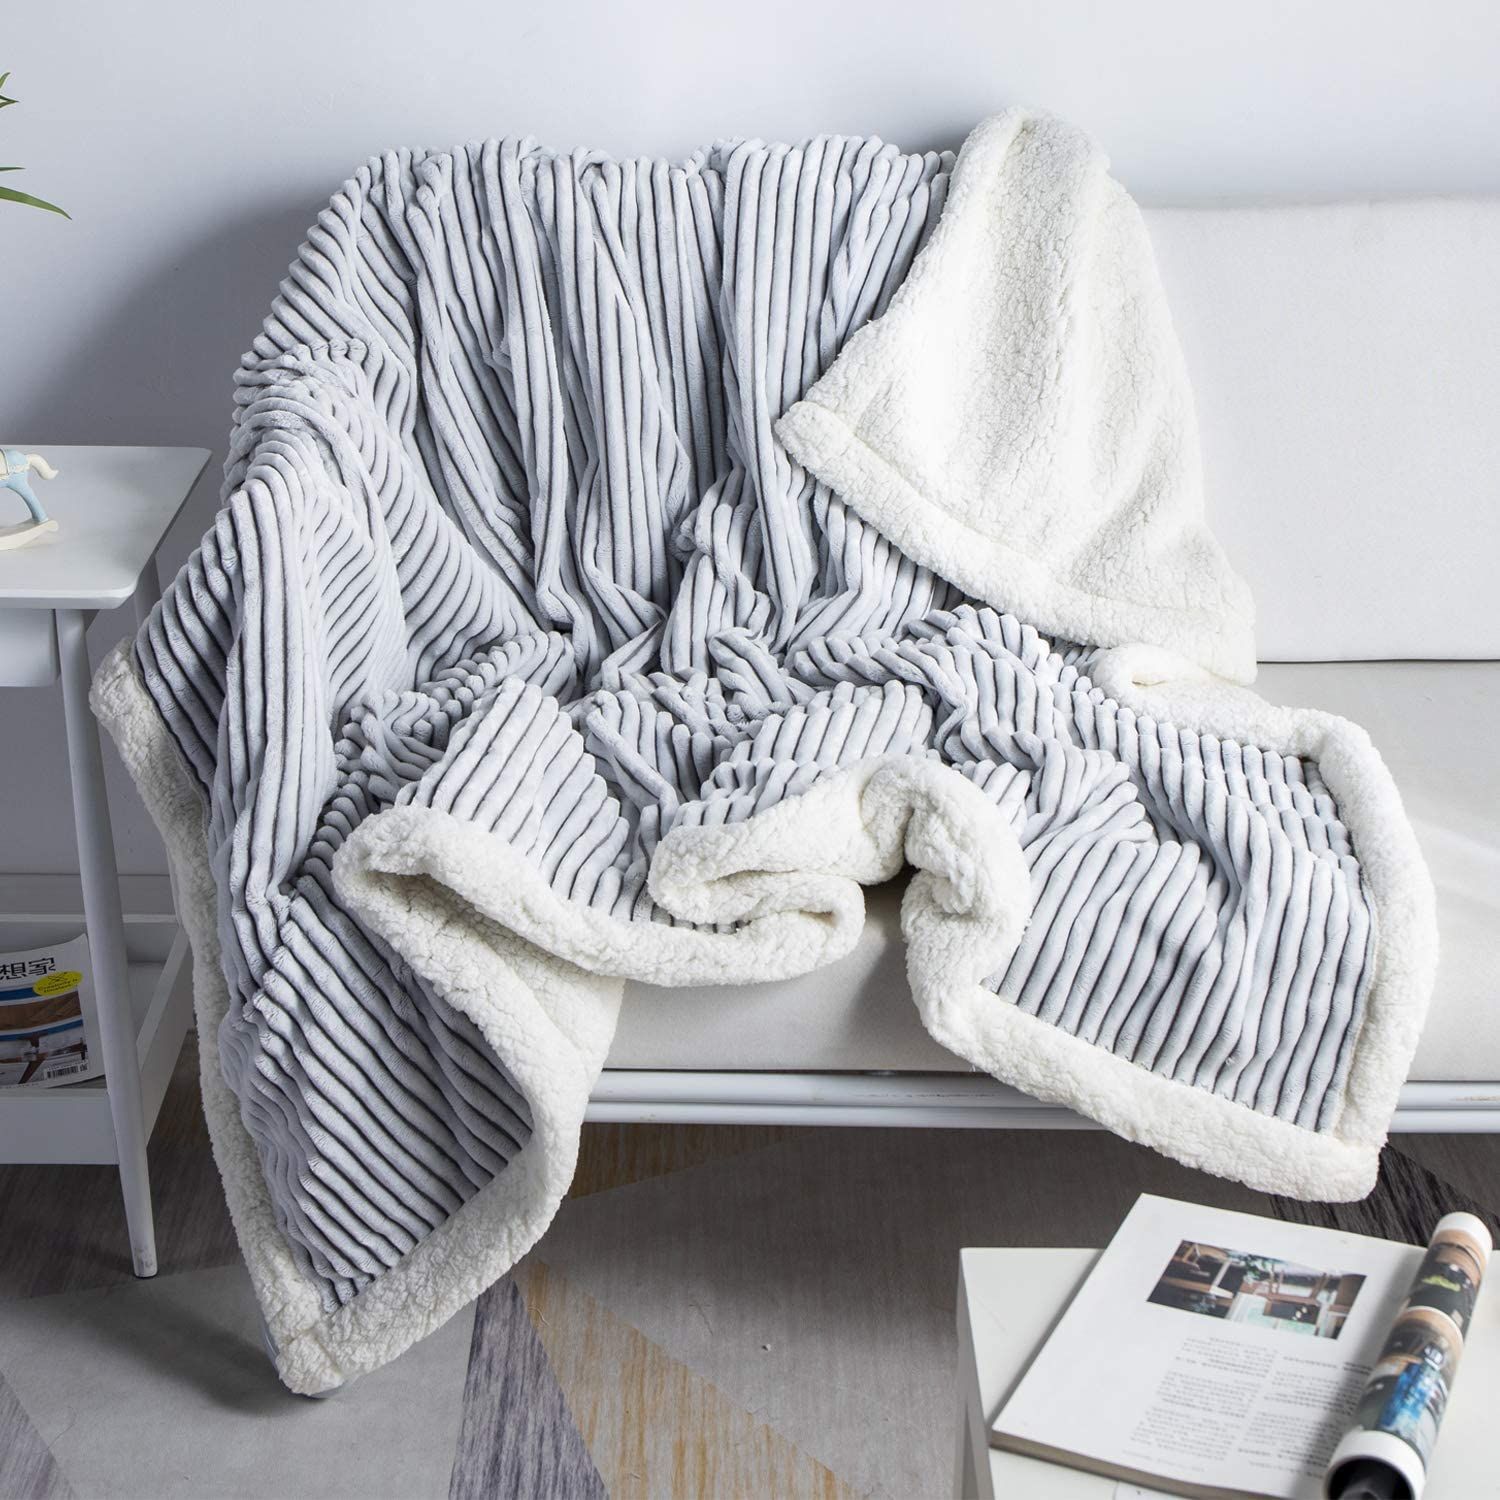 Newspaper Patterned,Ultra-Soft Long Blanket Warm Blanket-Cozy Lightweight Soft Blanket 